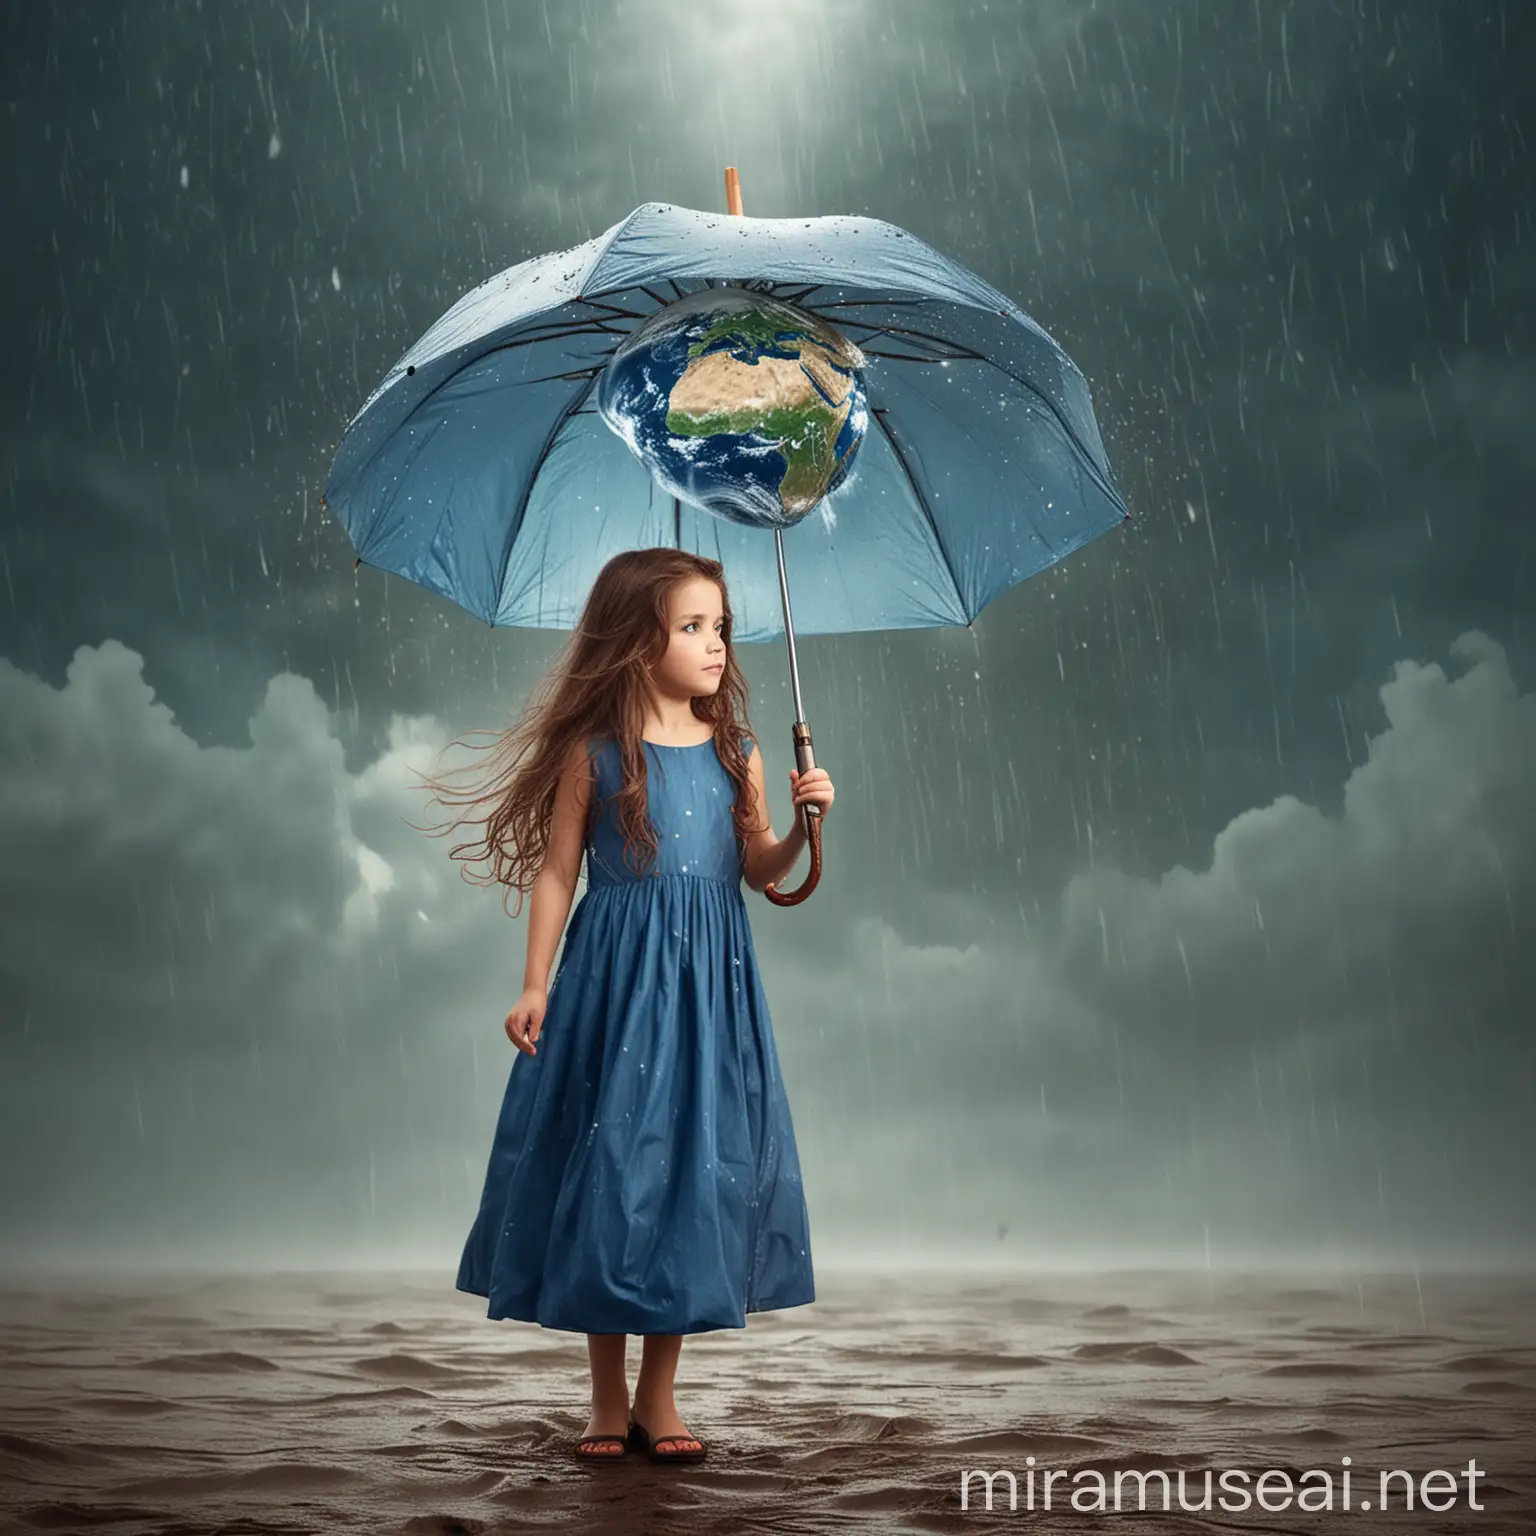 یه بچه زیبا سورعال و دیجیتال ارت موهای بلند قهوه ای که یه چتر بزرگ دستش گرفته ودردستش کره زمین به دست گرفته 
لباس آبی زیبا بلند برتنش می‌باشد وازاسمان باران می‌بارد نماد کمک به کره زمین لطفا بسیار خاص وخوب طراحی کن
